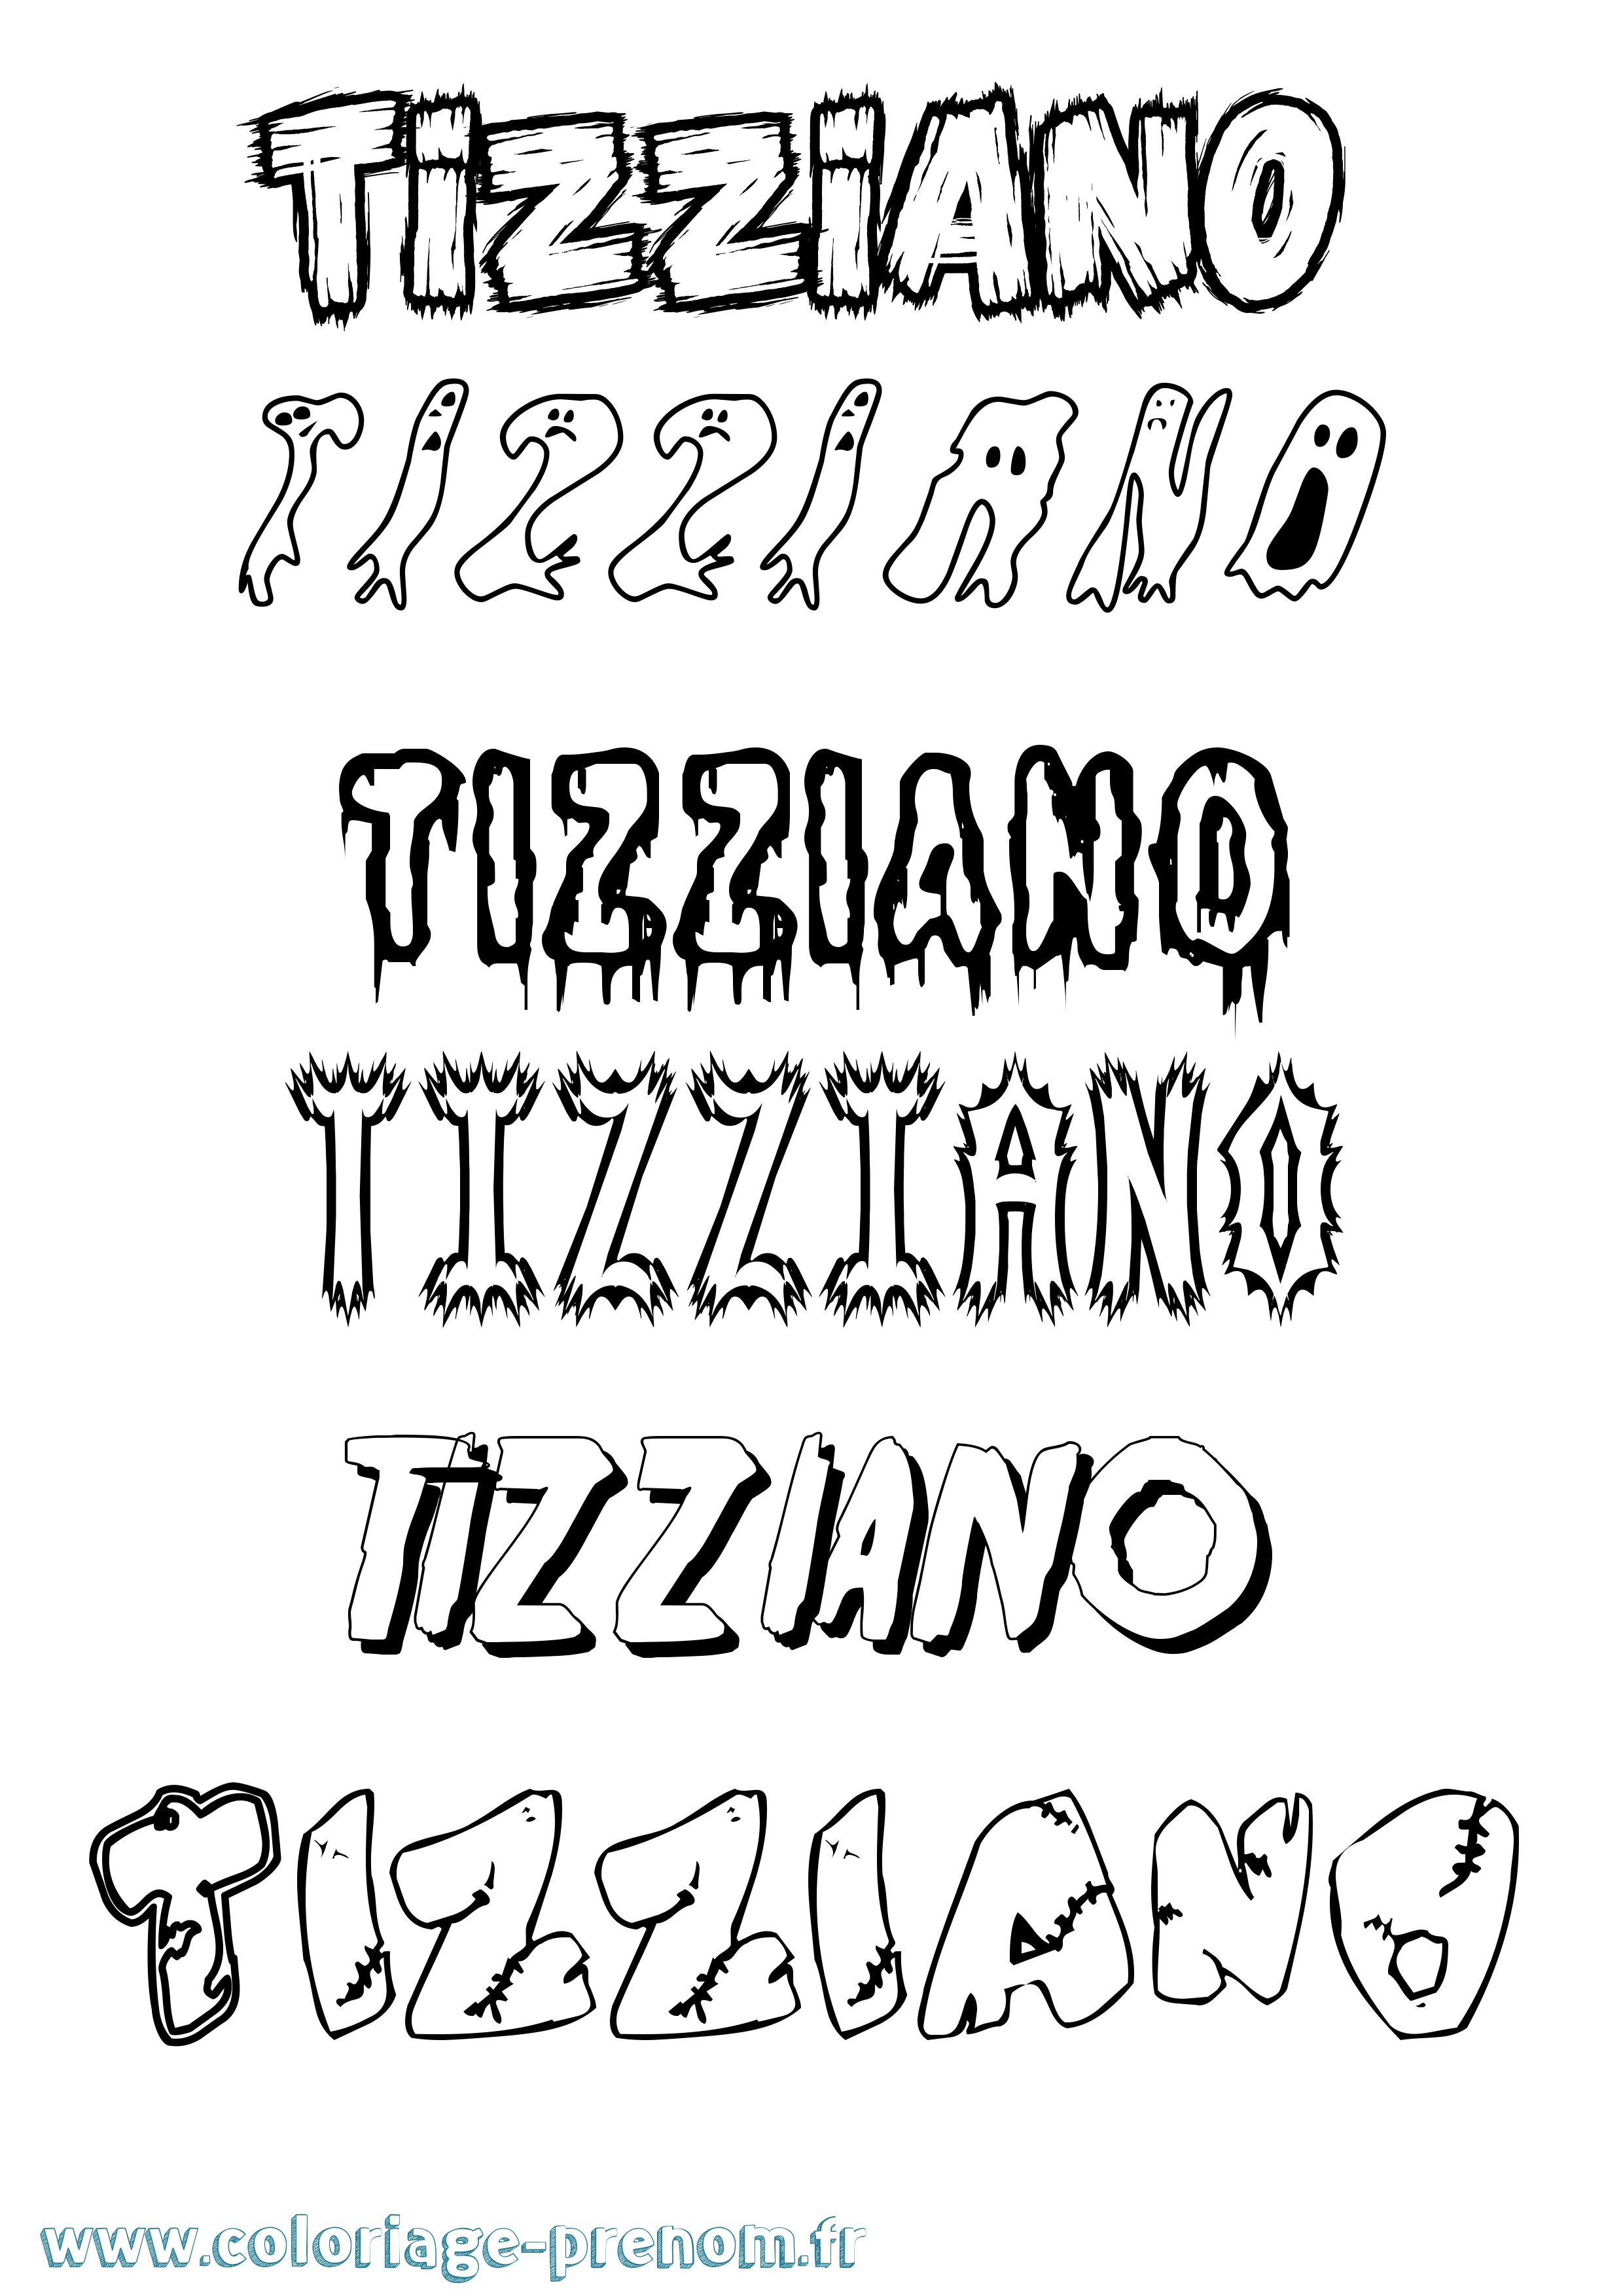 Coloriage prénom Tizziano Frisson